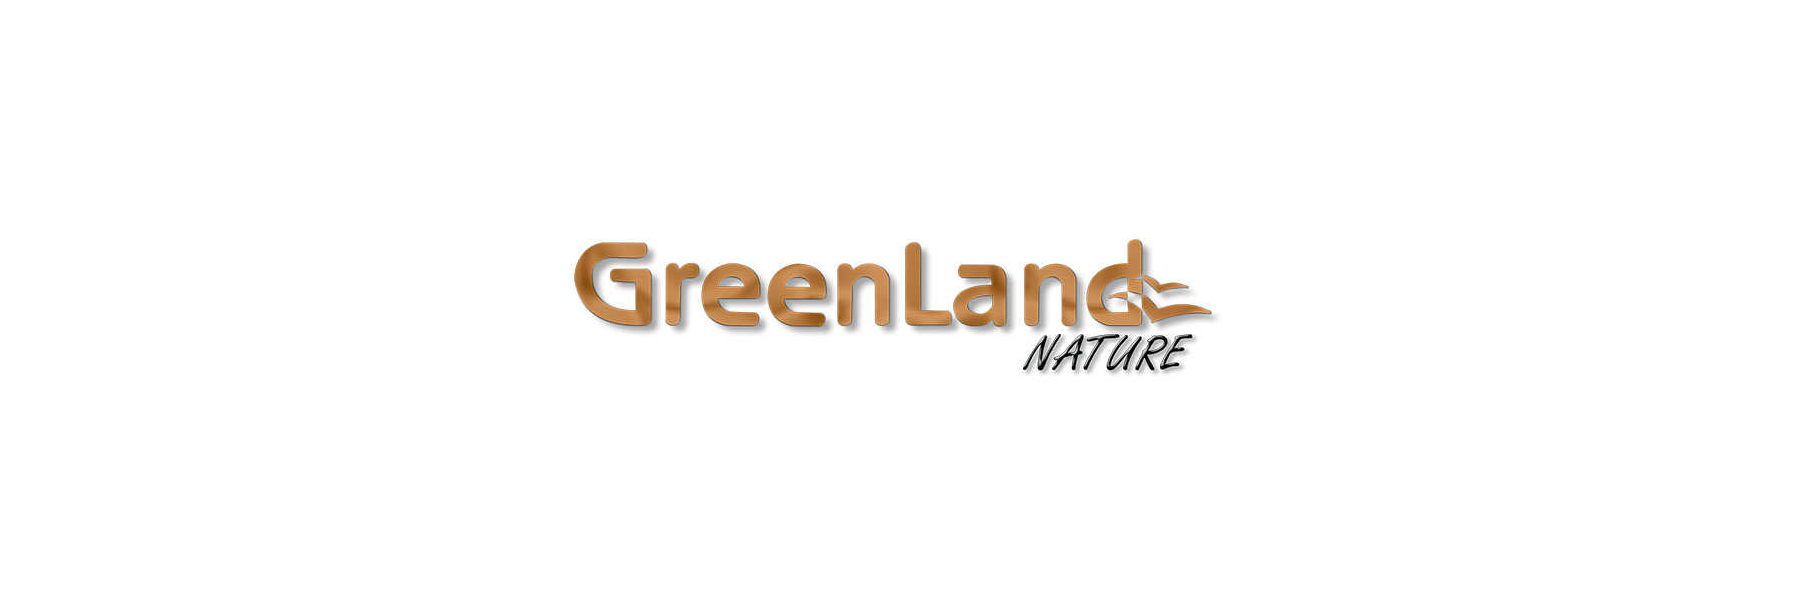 Greenland Nature Lederwaren natürlich gegerbt Geldboerse Online - Gel